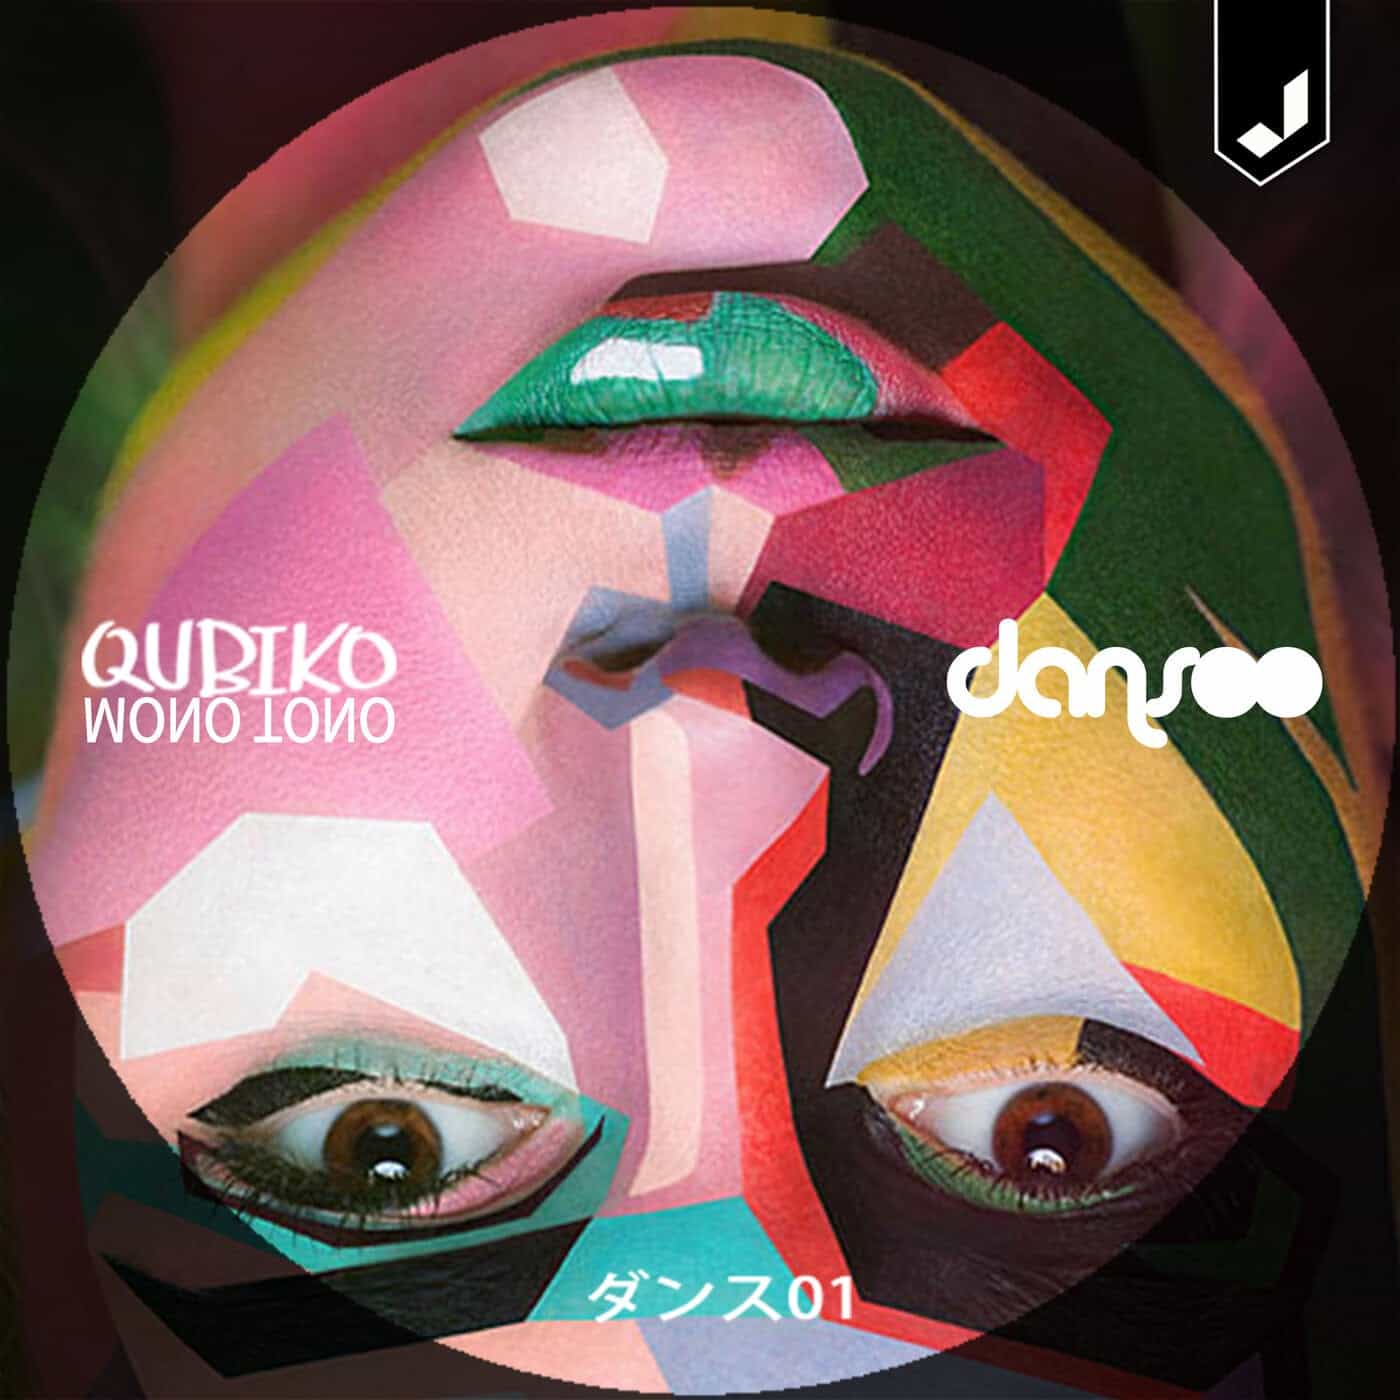 Download Qubiko - Mono Tono on Electrobuzz